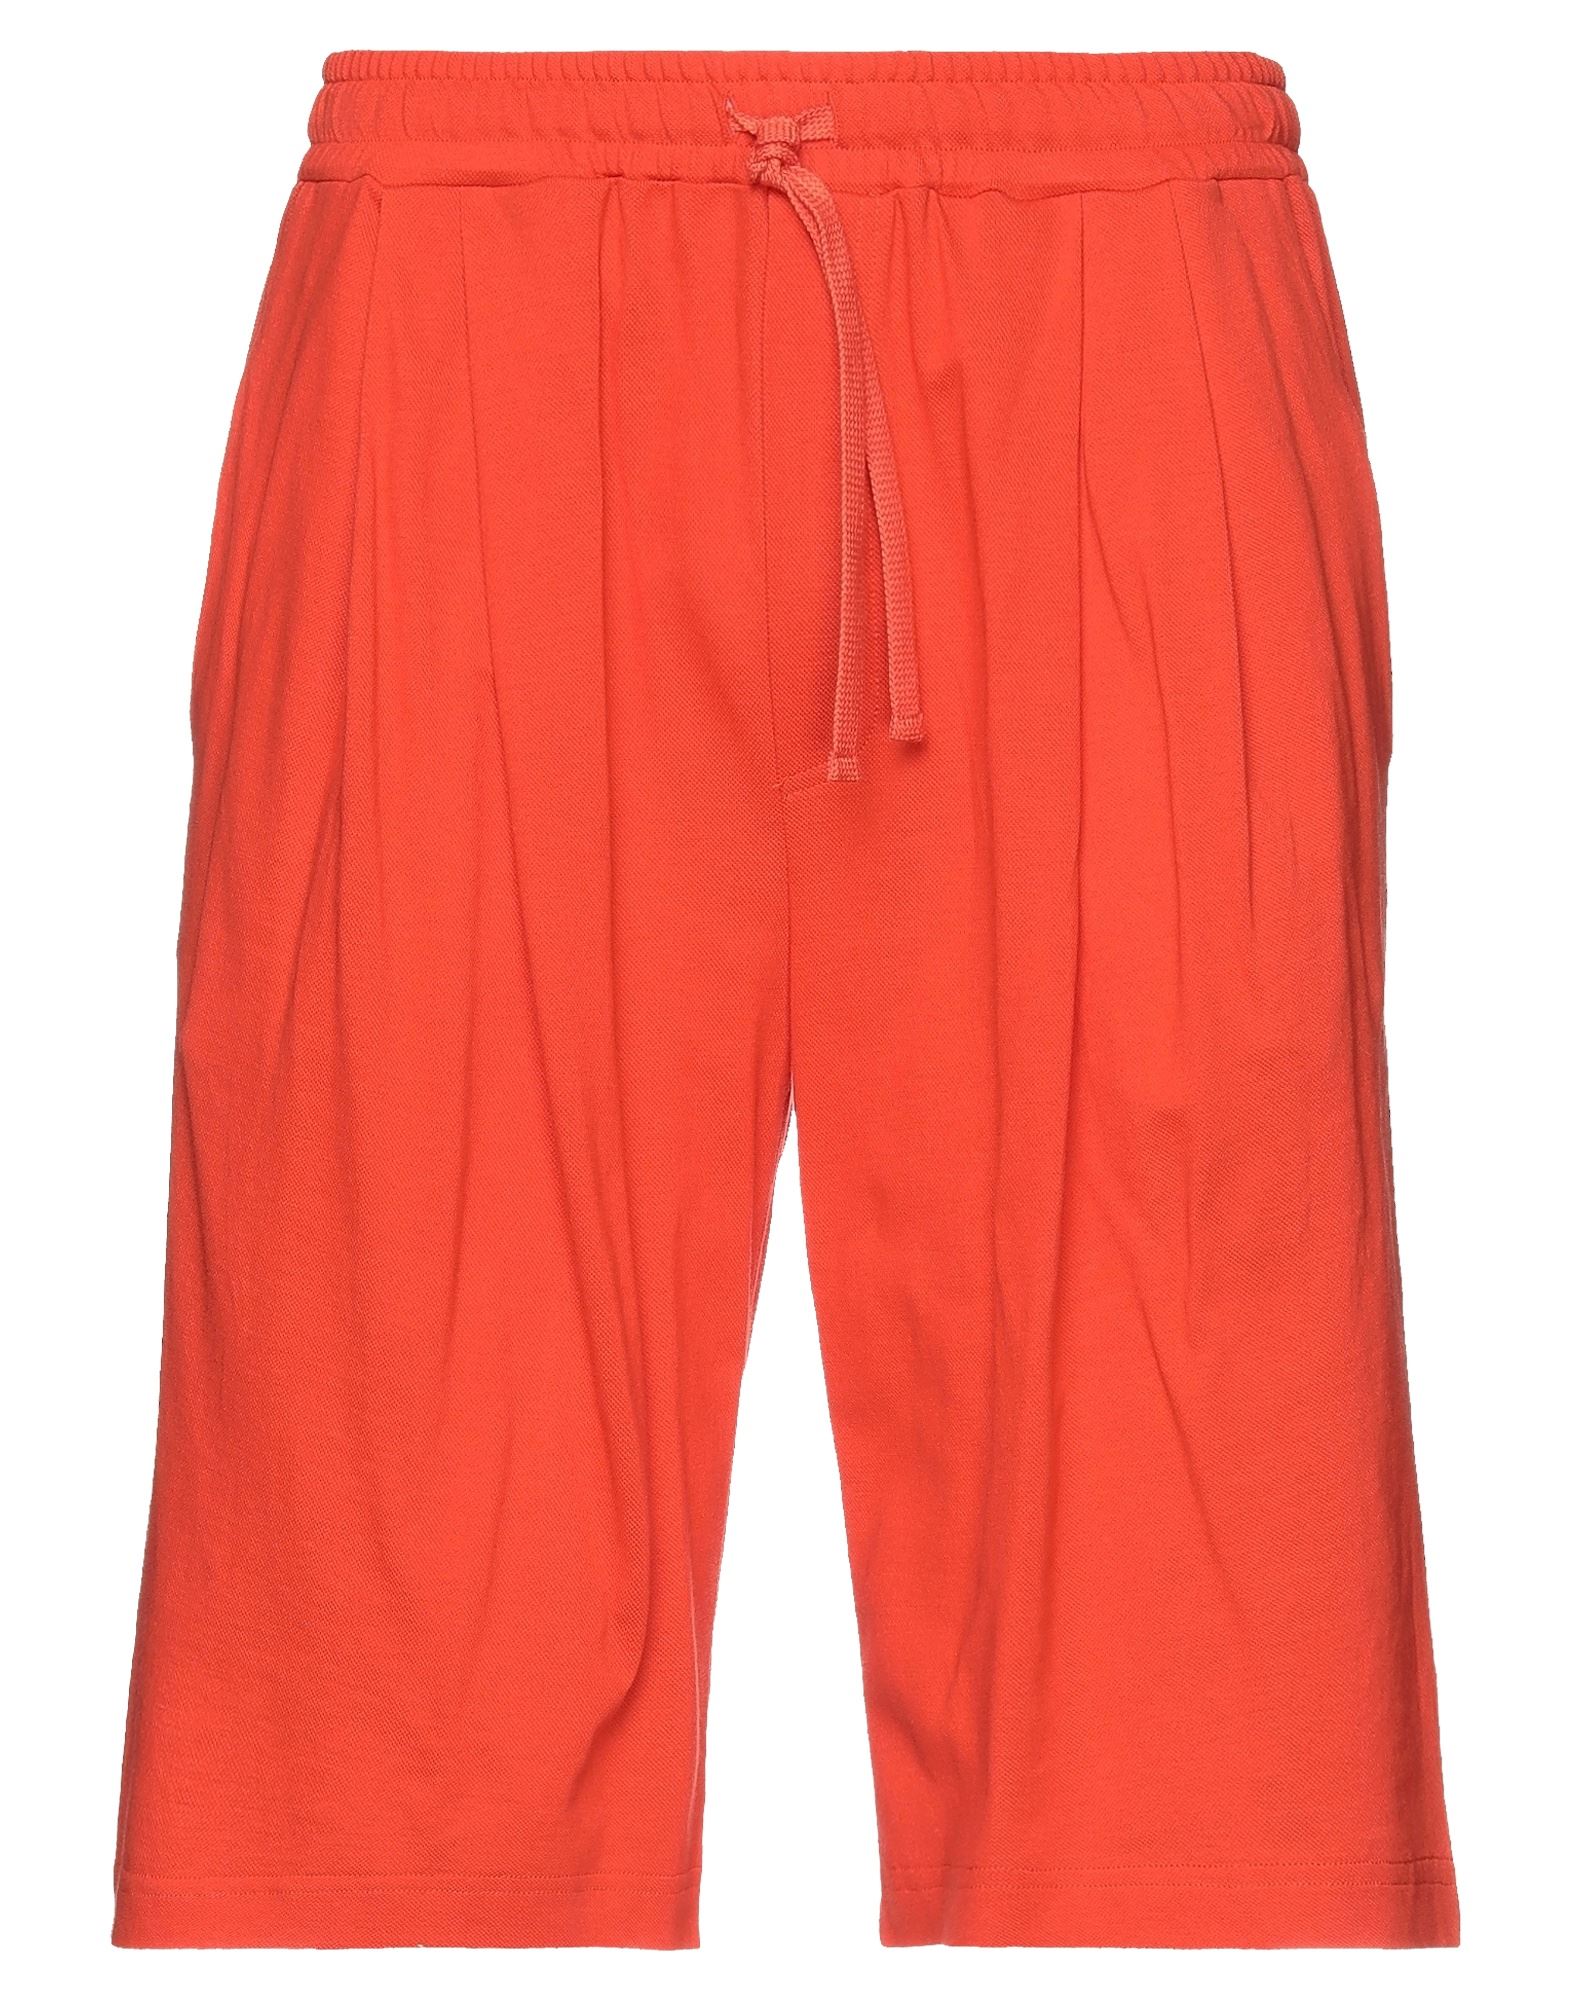 Dolce & Gabbana Man Shorts & Bermuda Shorts Orange Size 32 Cotton, Viscose